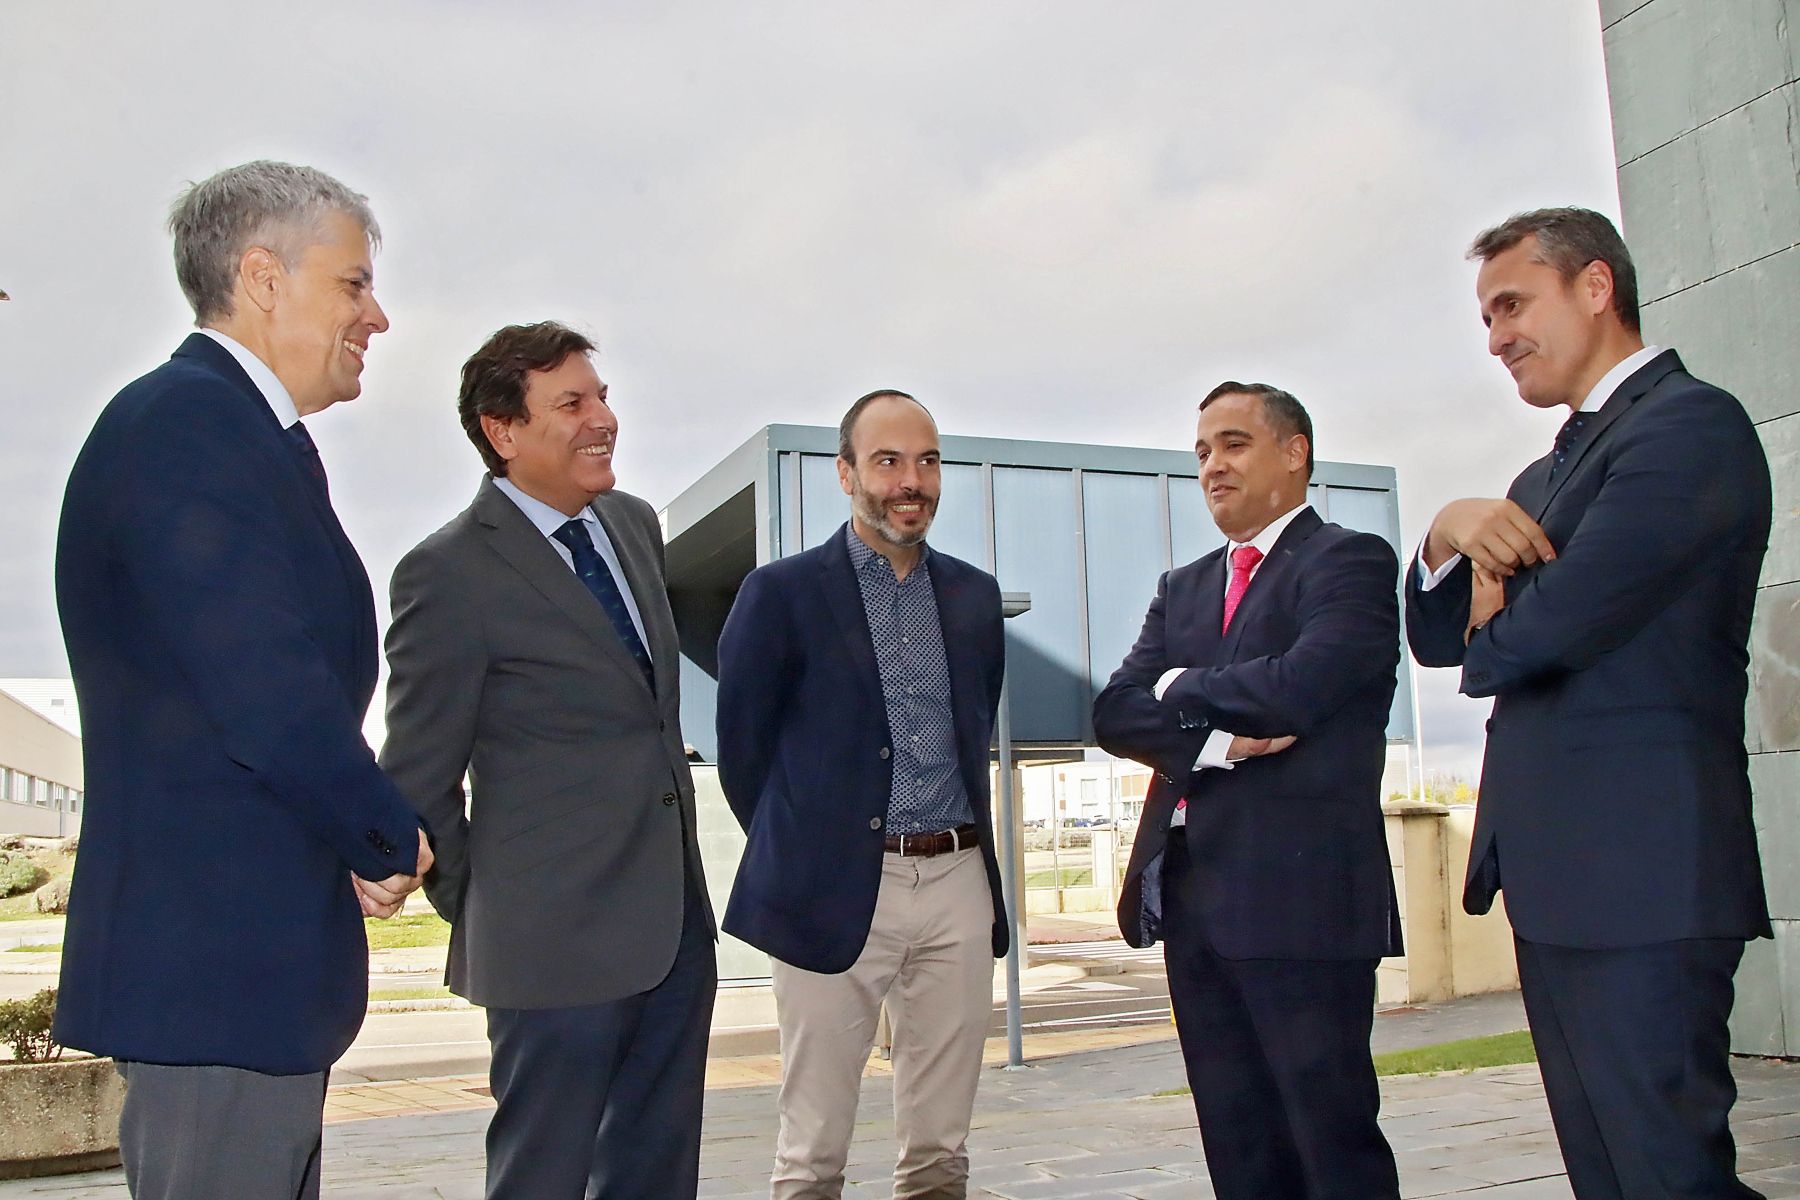  Carlos Fernández Carriedo, el consejero de Economía y Hacienda y portavoz, realiza una visita a la empresa Tresca Ingeniería.